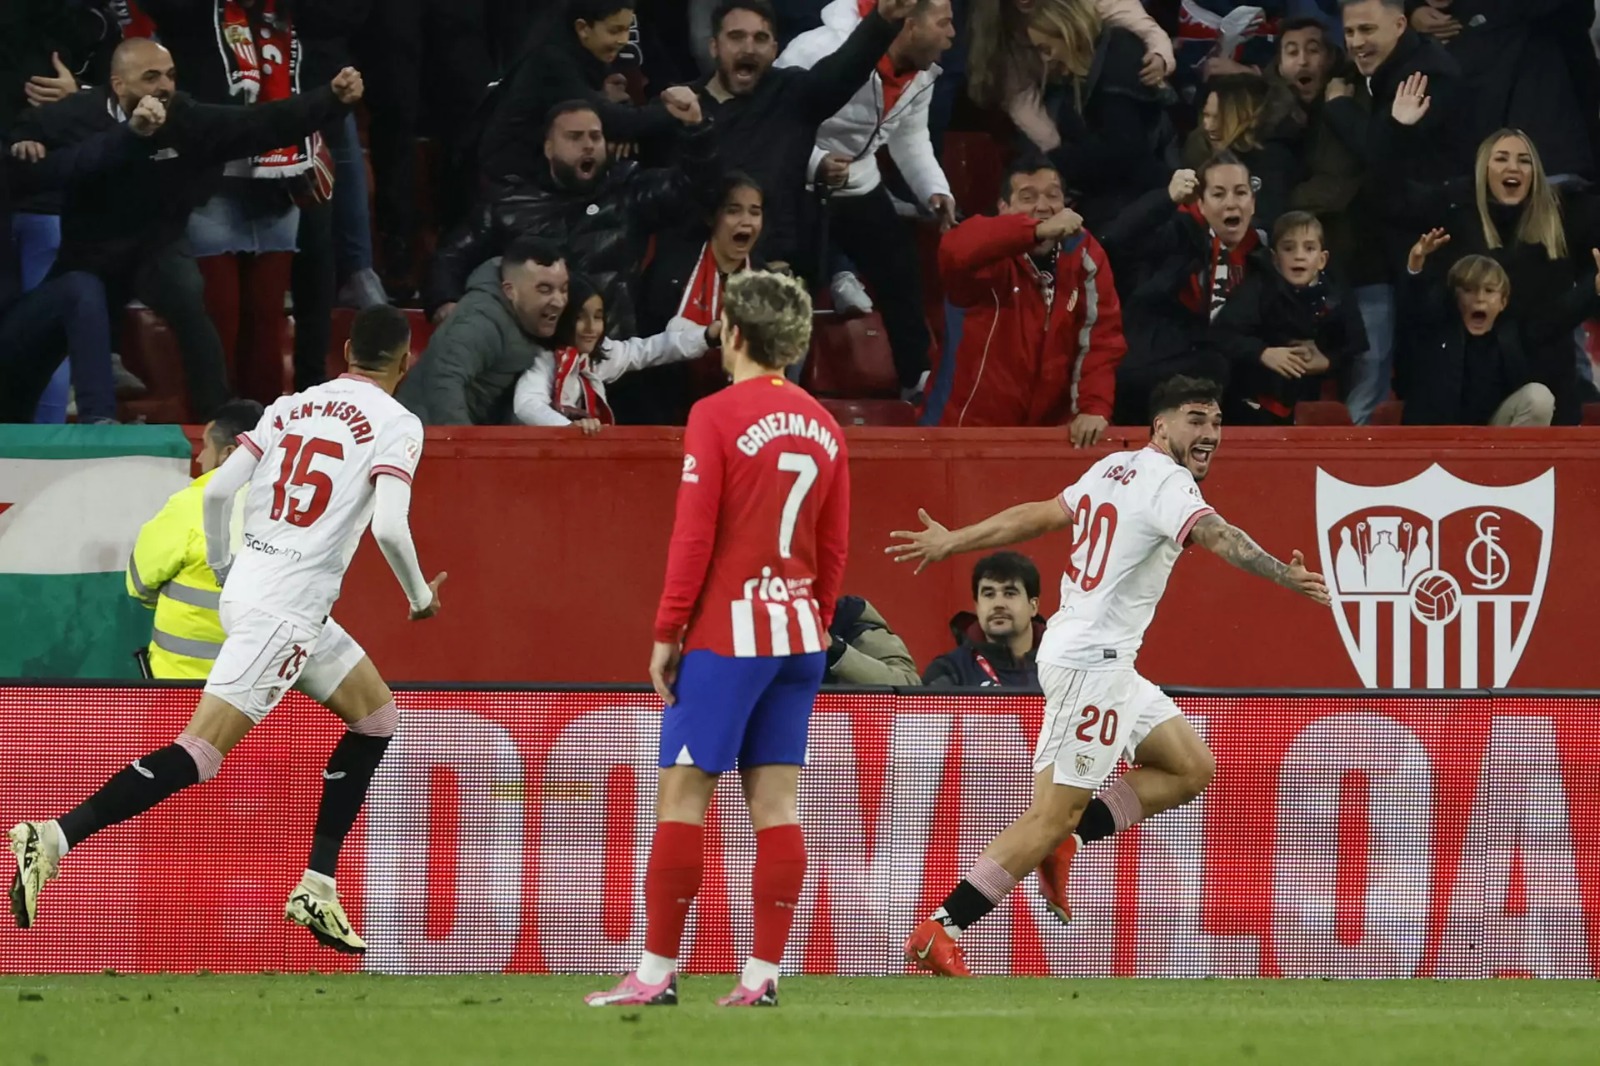 ESPANHOL: Sevilla derrota Atlético de Madrid por 1 a 0 em grande jogo